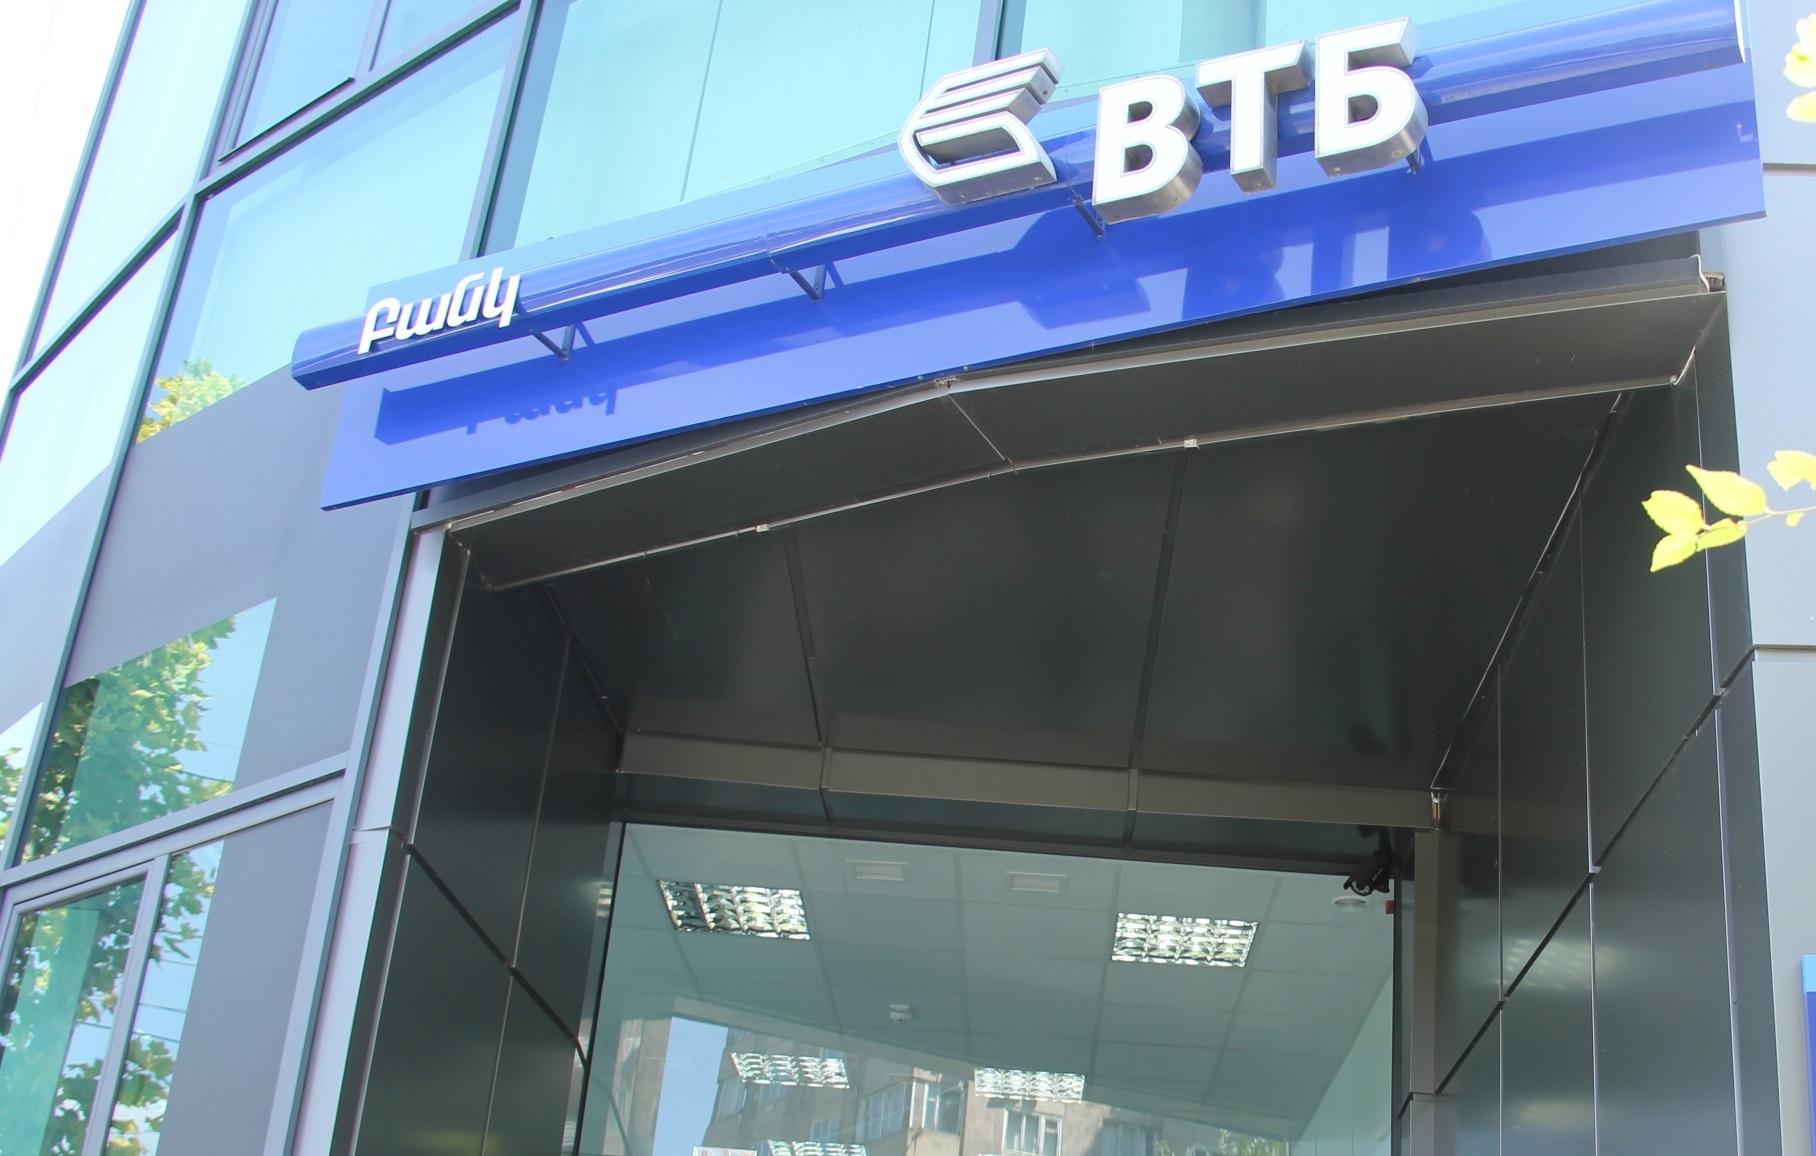 ՎՏԲ-Հայաստան Բանկն առաջատարն է ՀՀ բանկերի շրջանում վարկային ներդրումների ծավալով